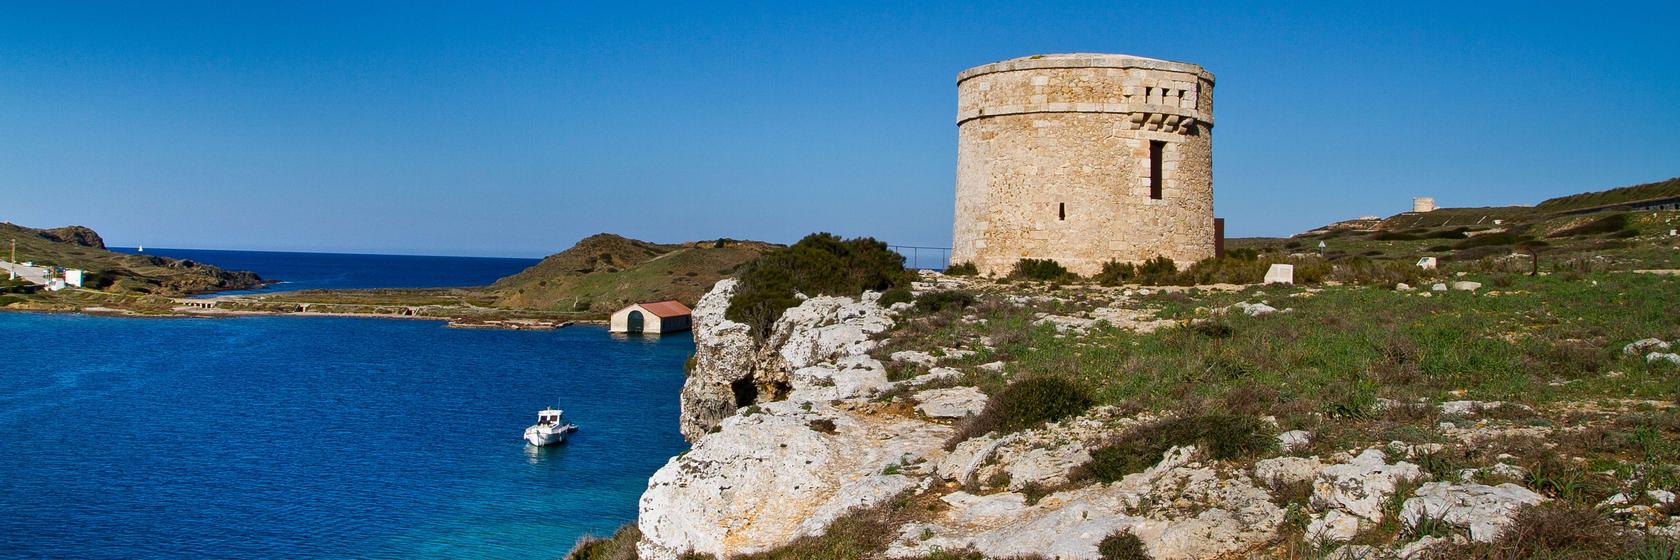 Tipy na výlety na Menorce